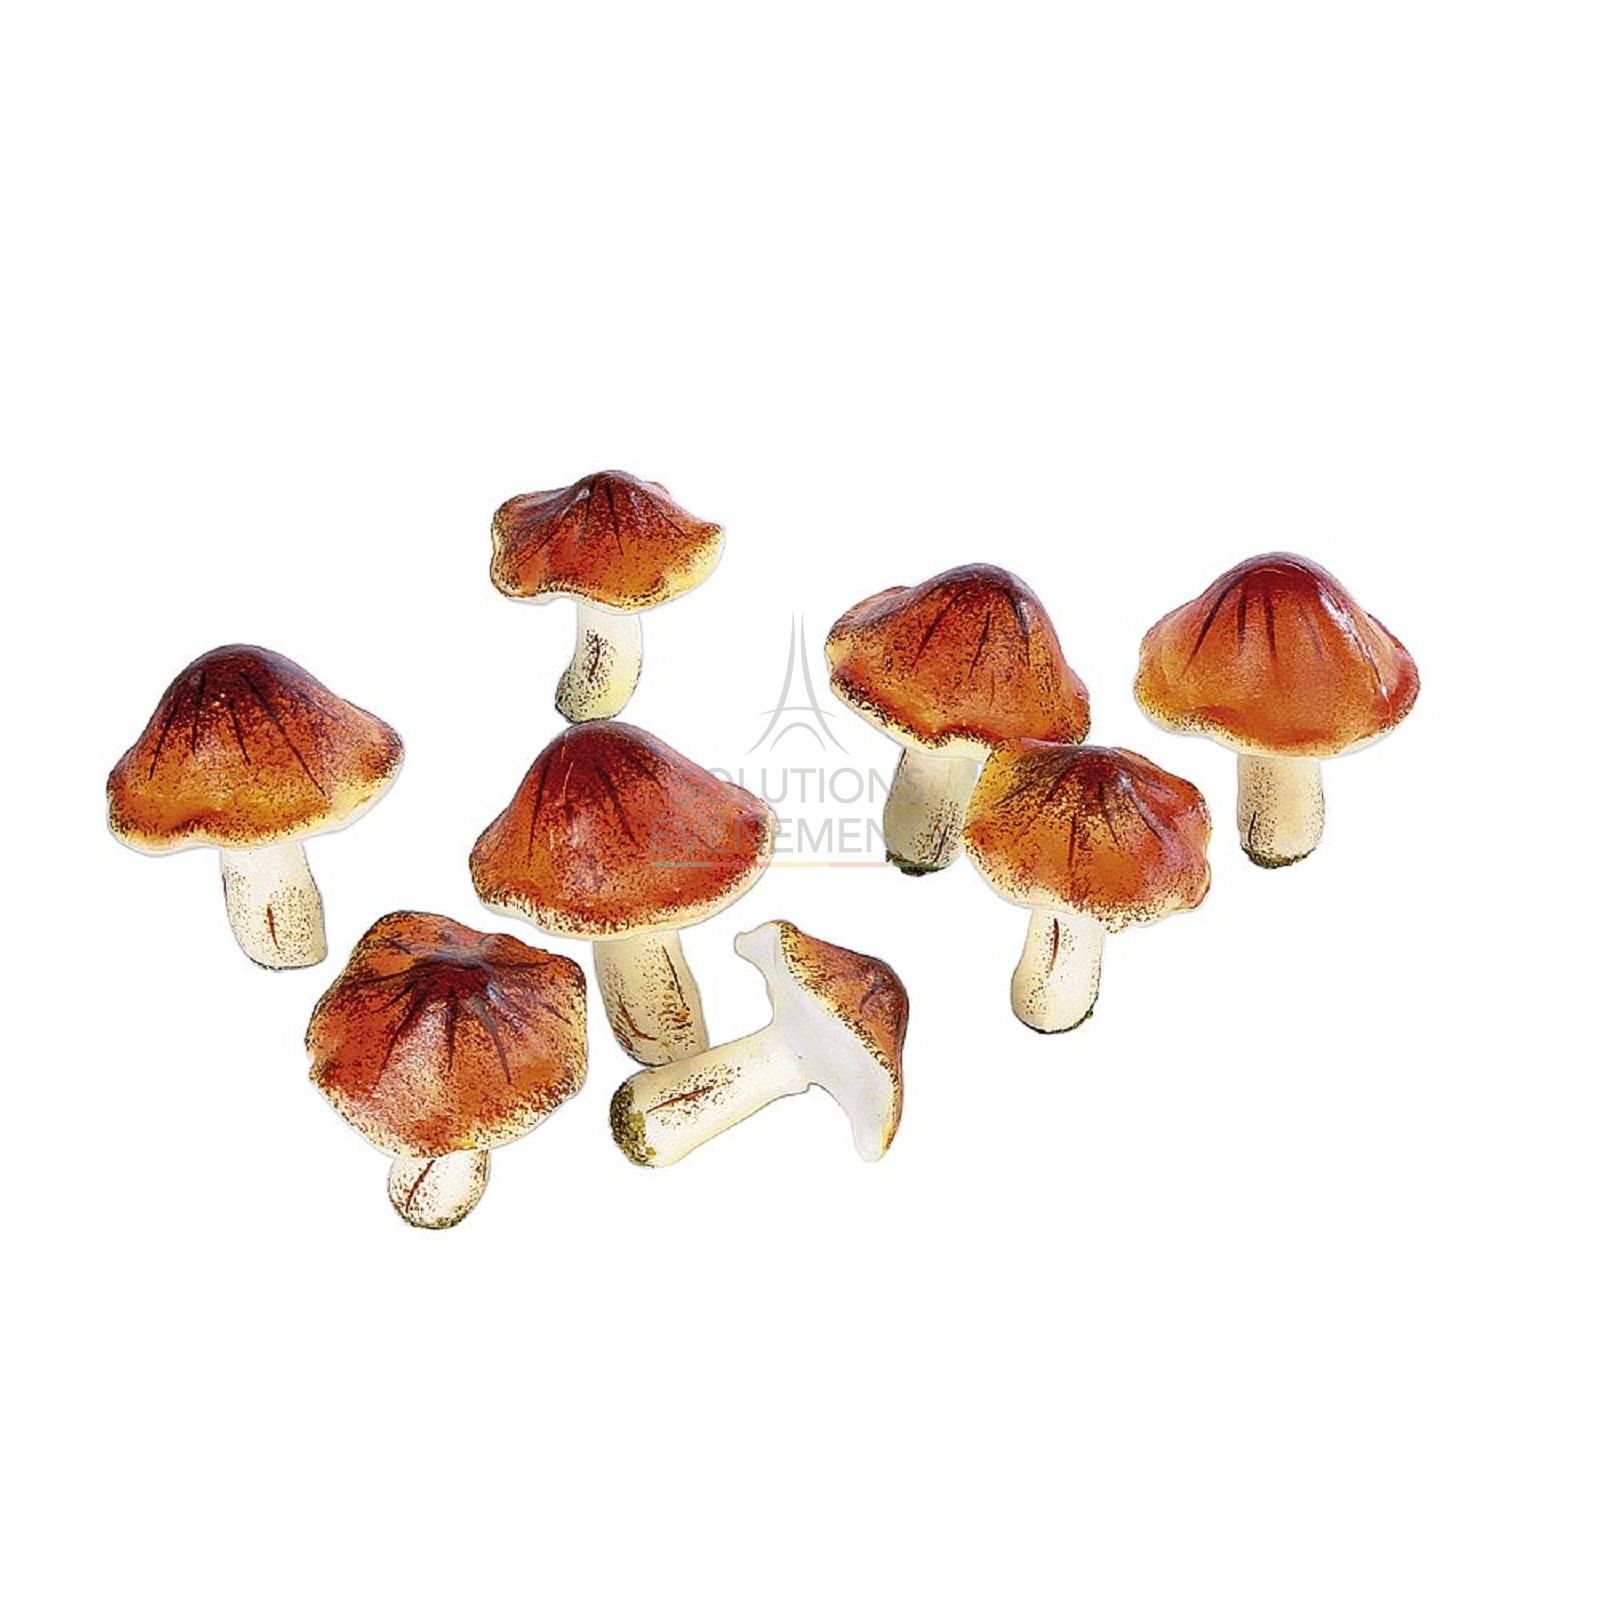 Rental of fake mushrooms